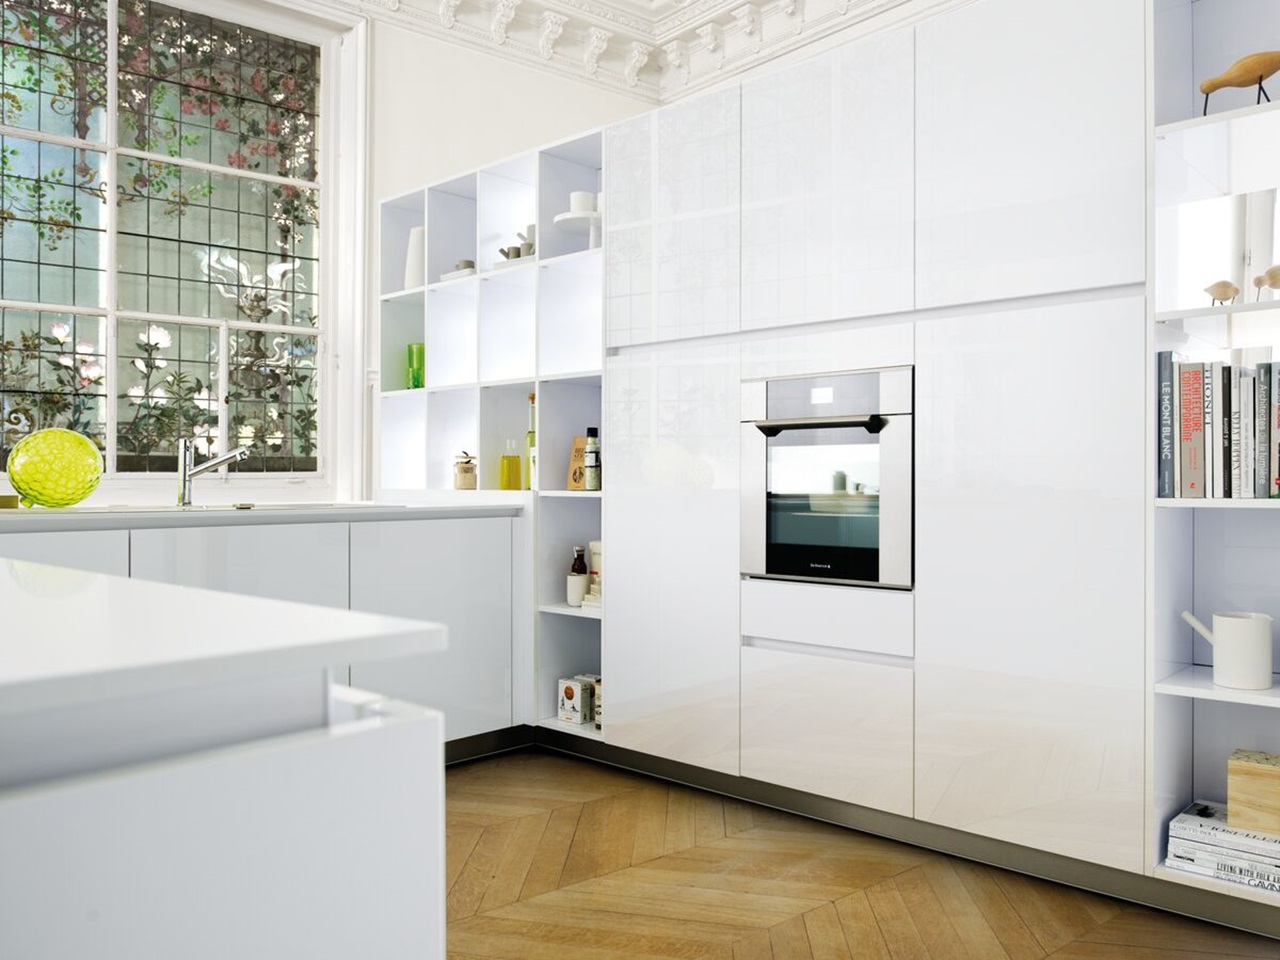 Cocina blanca contemporánea en forma de U con bibliotecas y nichos de almacenamiento integrados